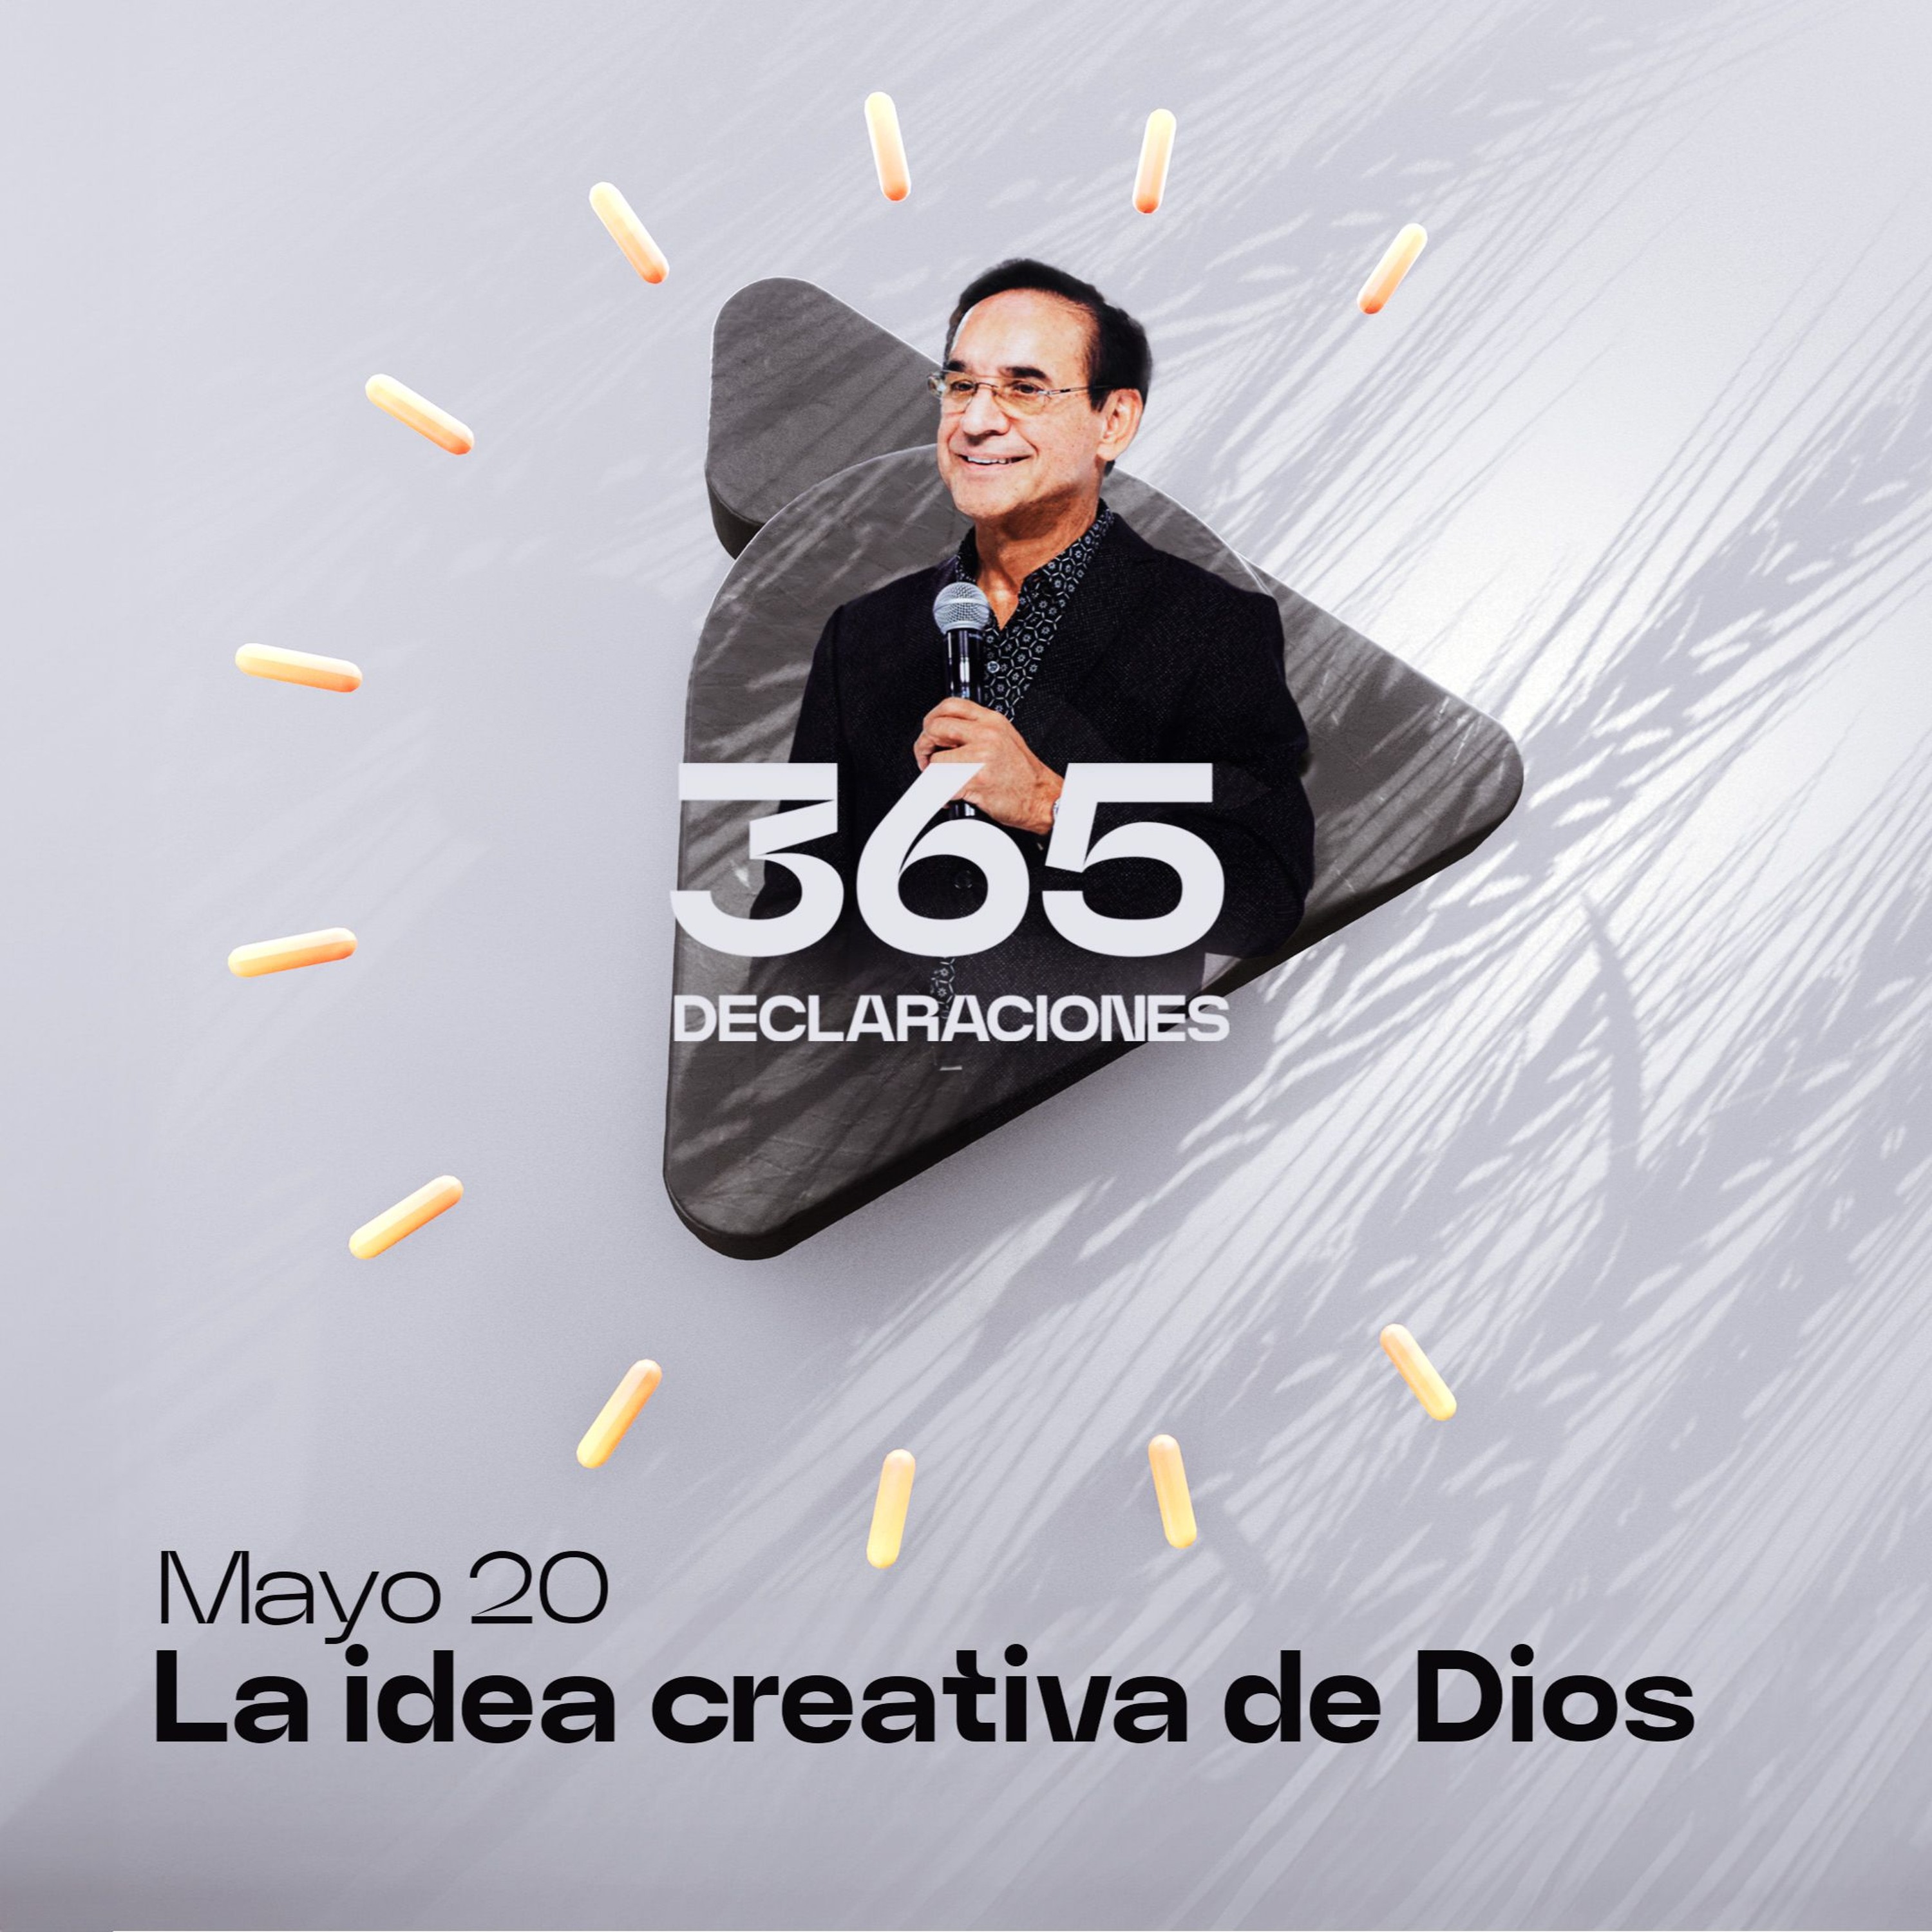 Declaración del día - La idea creativa de Dios - Mayo 20